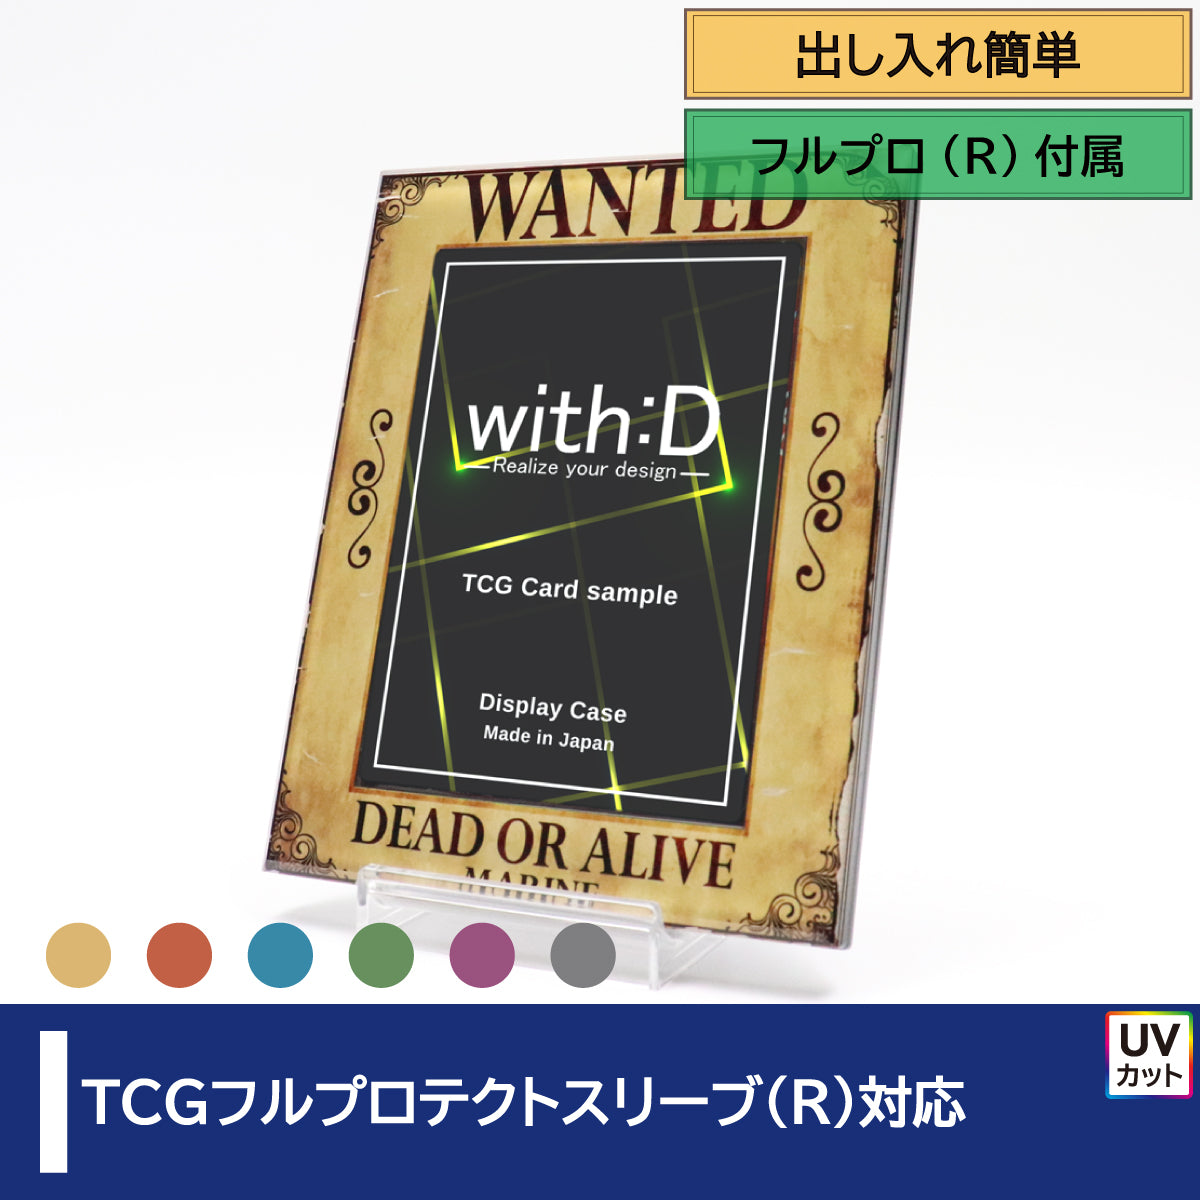 TCGフルプロテクト対応 – with:D